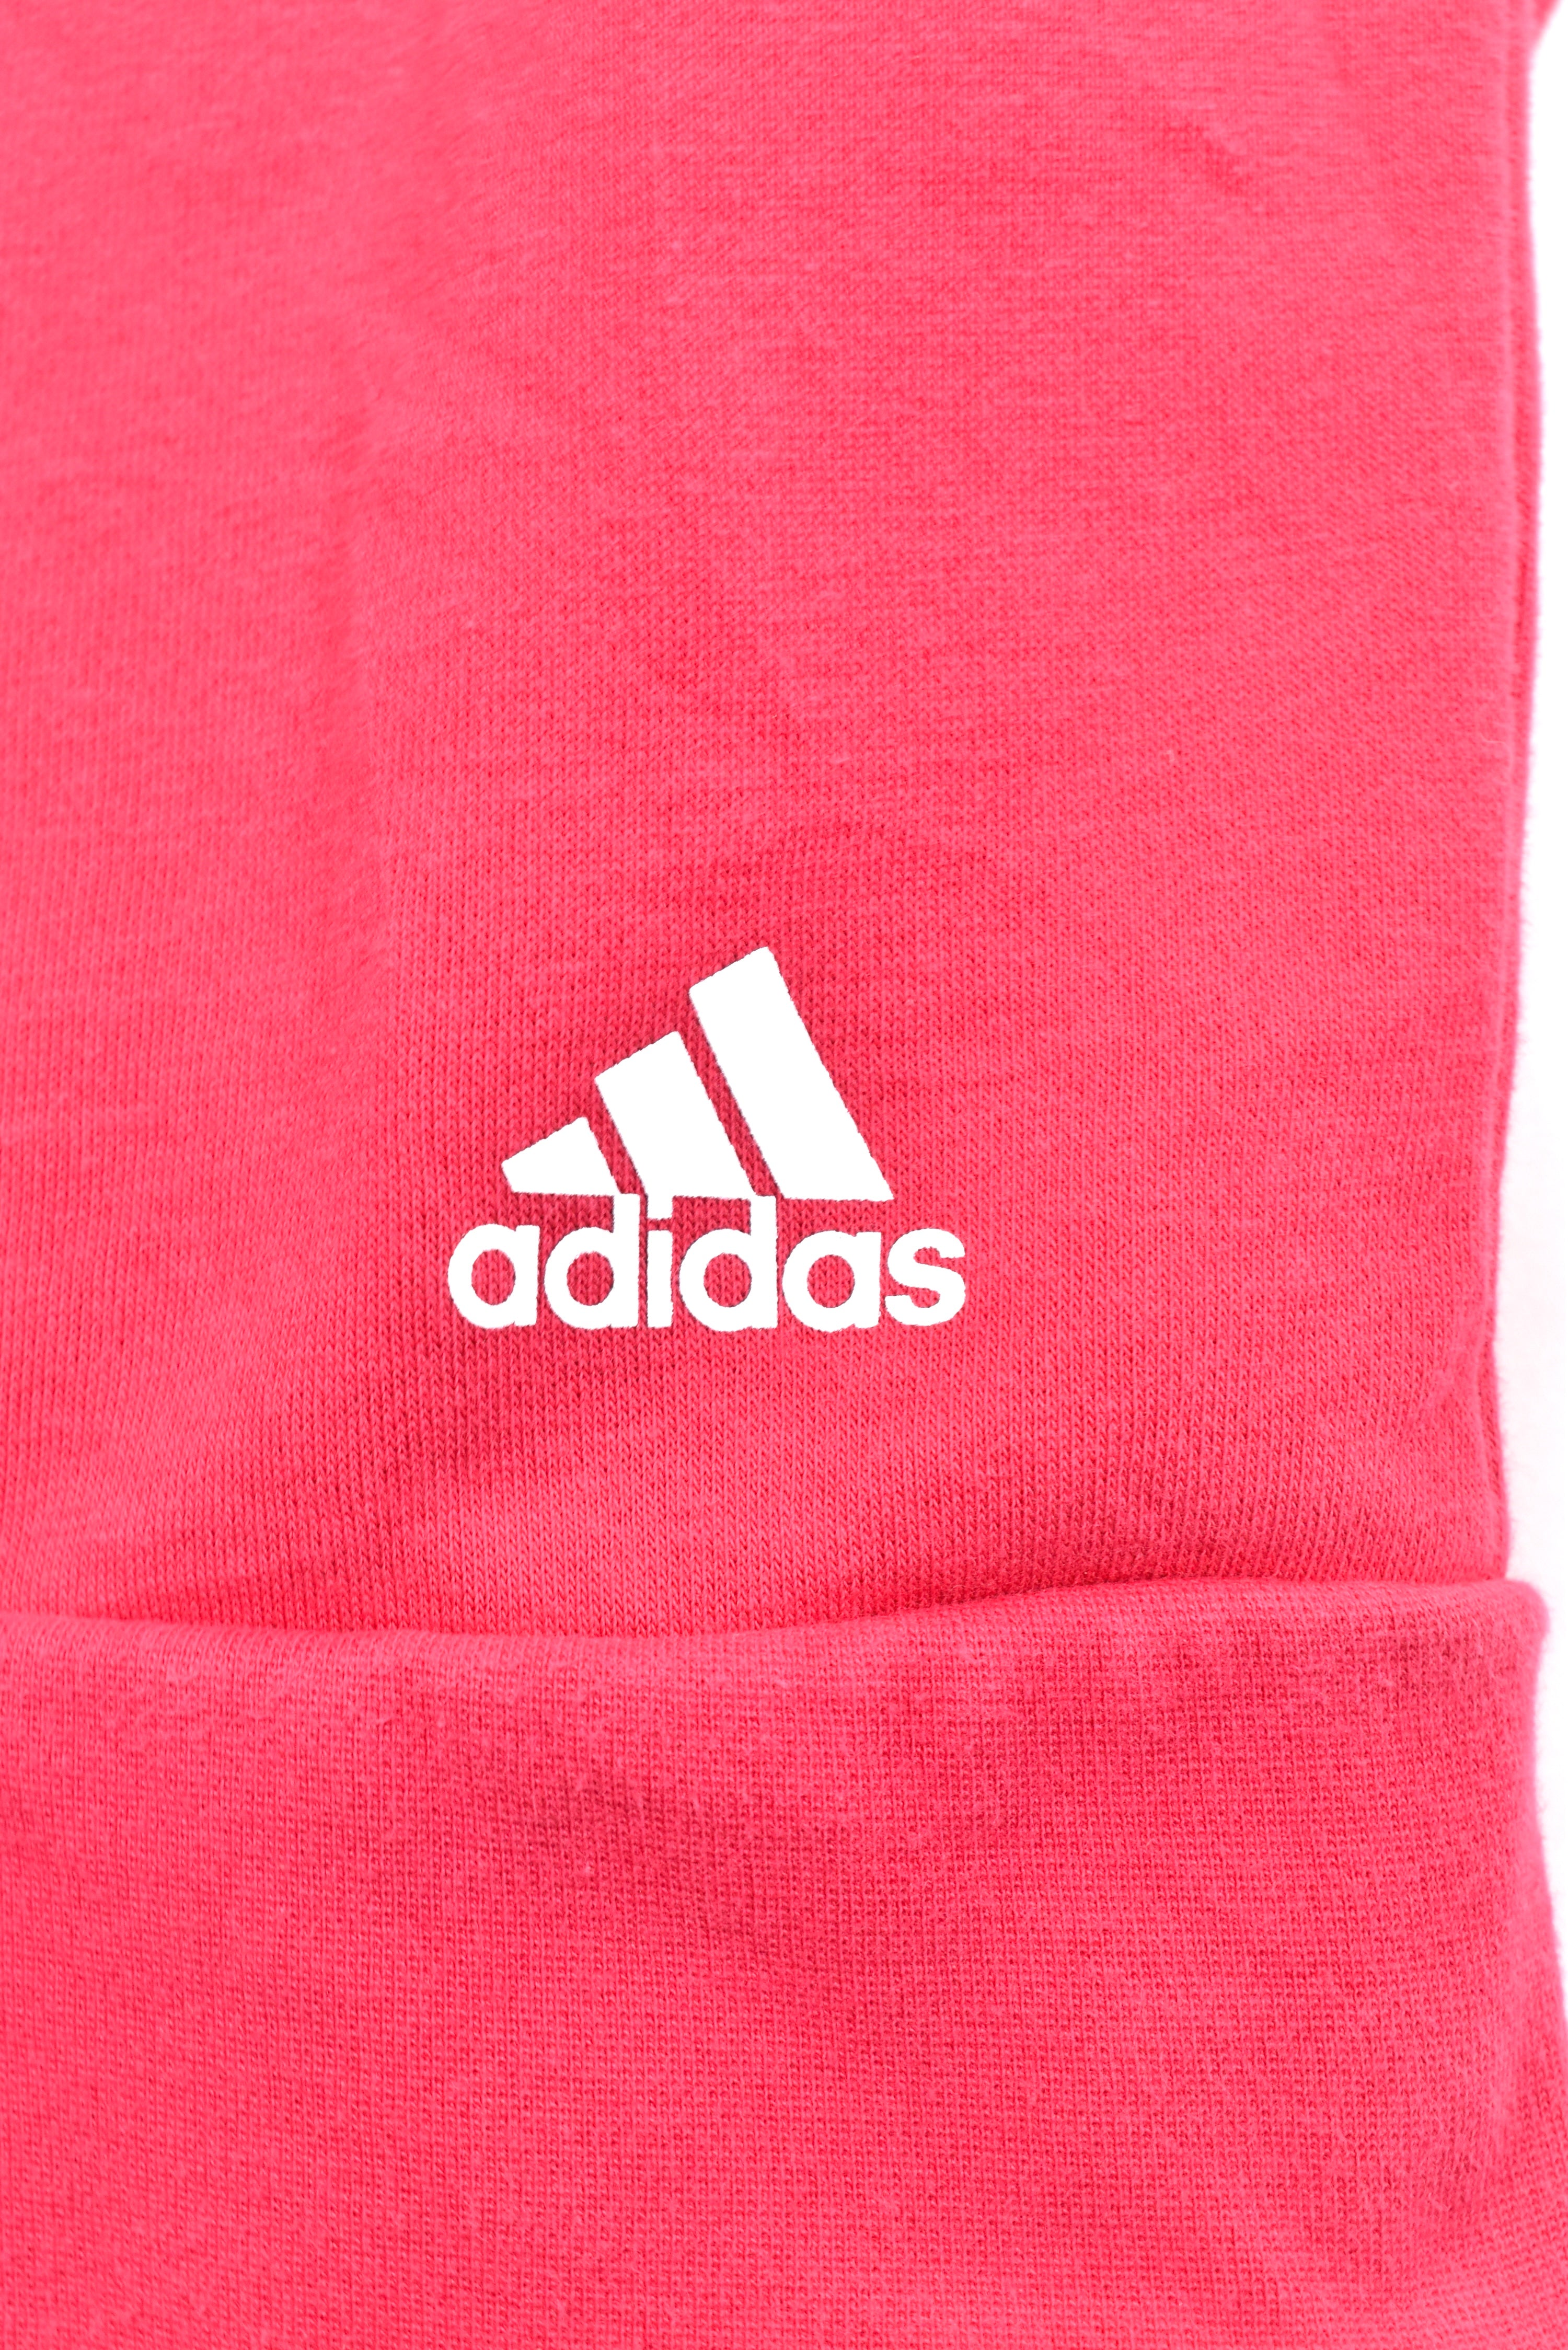 Women's modern Adidas hoodie, full zip hooded sweatshirt - medium, pink ADIDAS